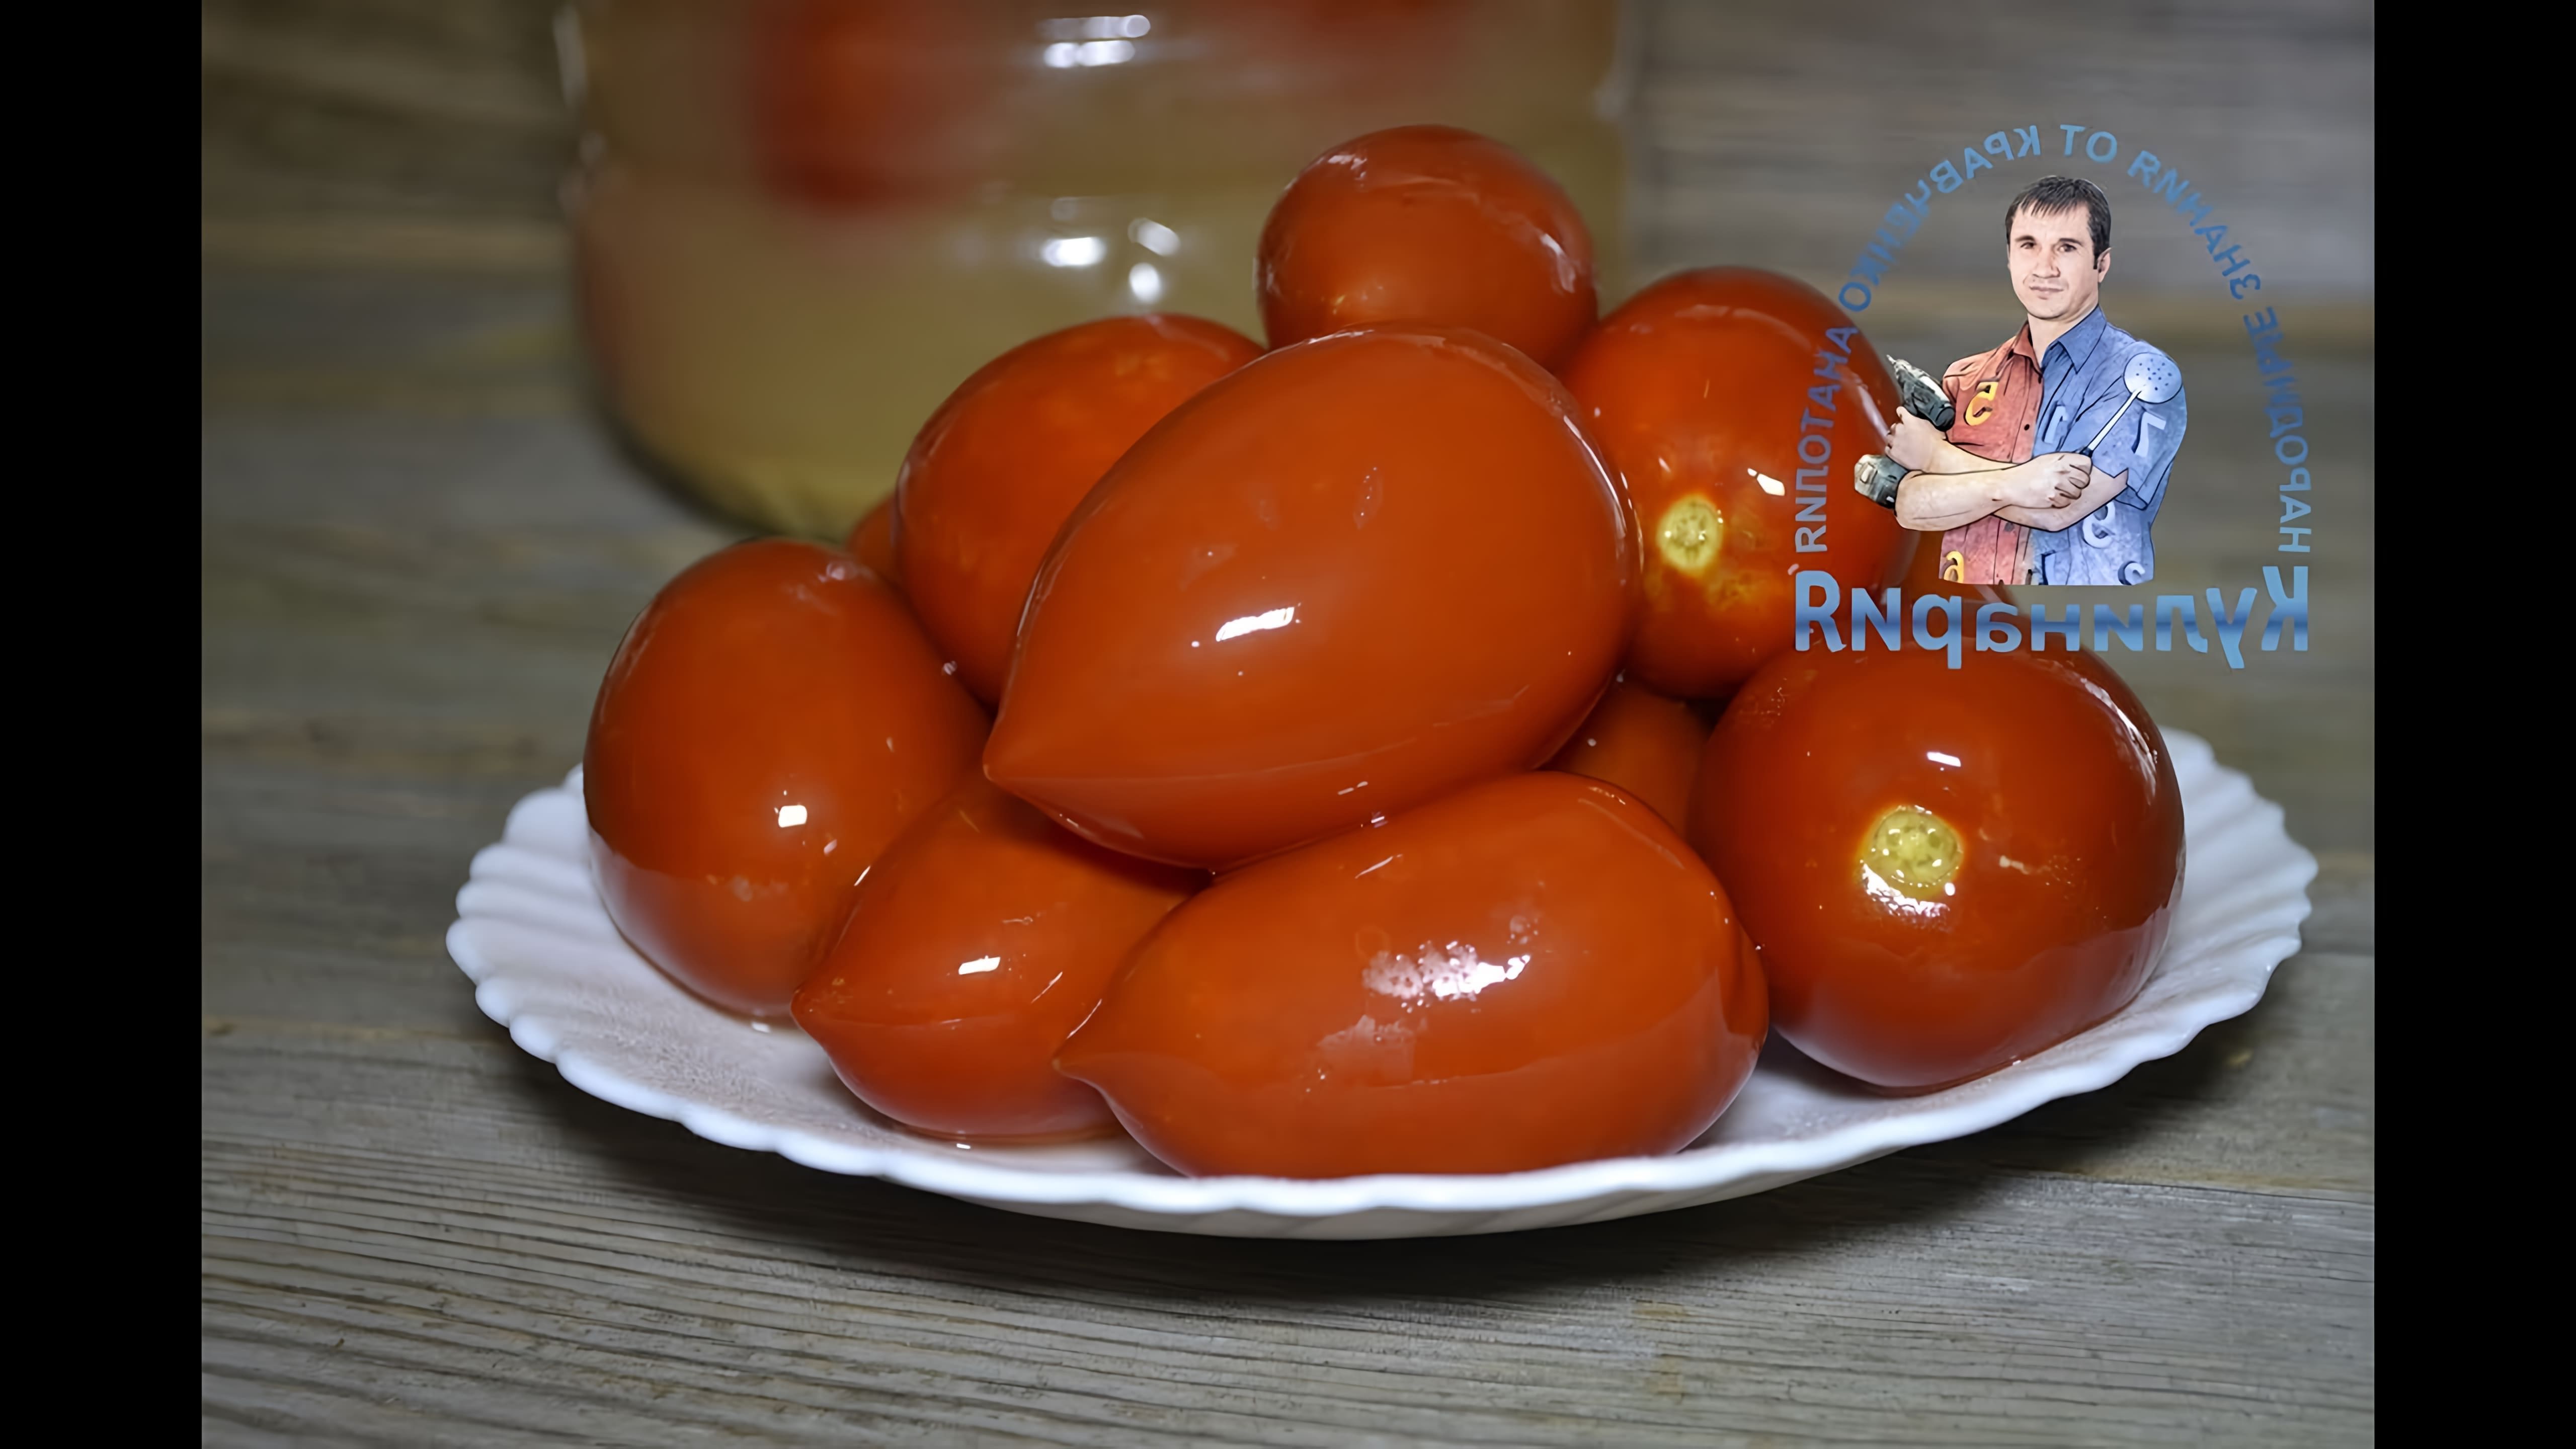 В этом видео показан рецепт приготовления бочковых помидоров холодным способом